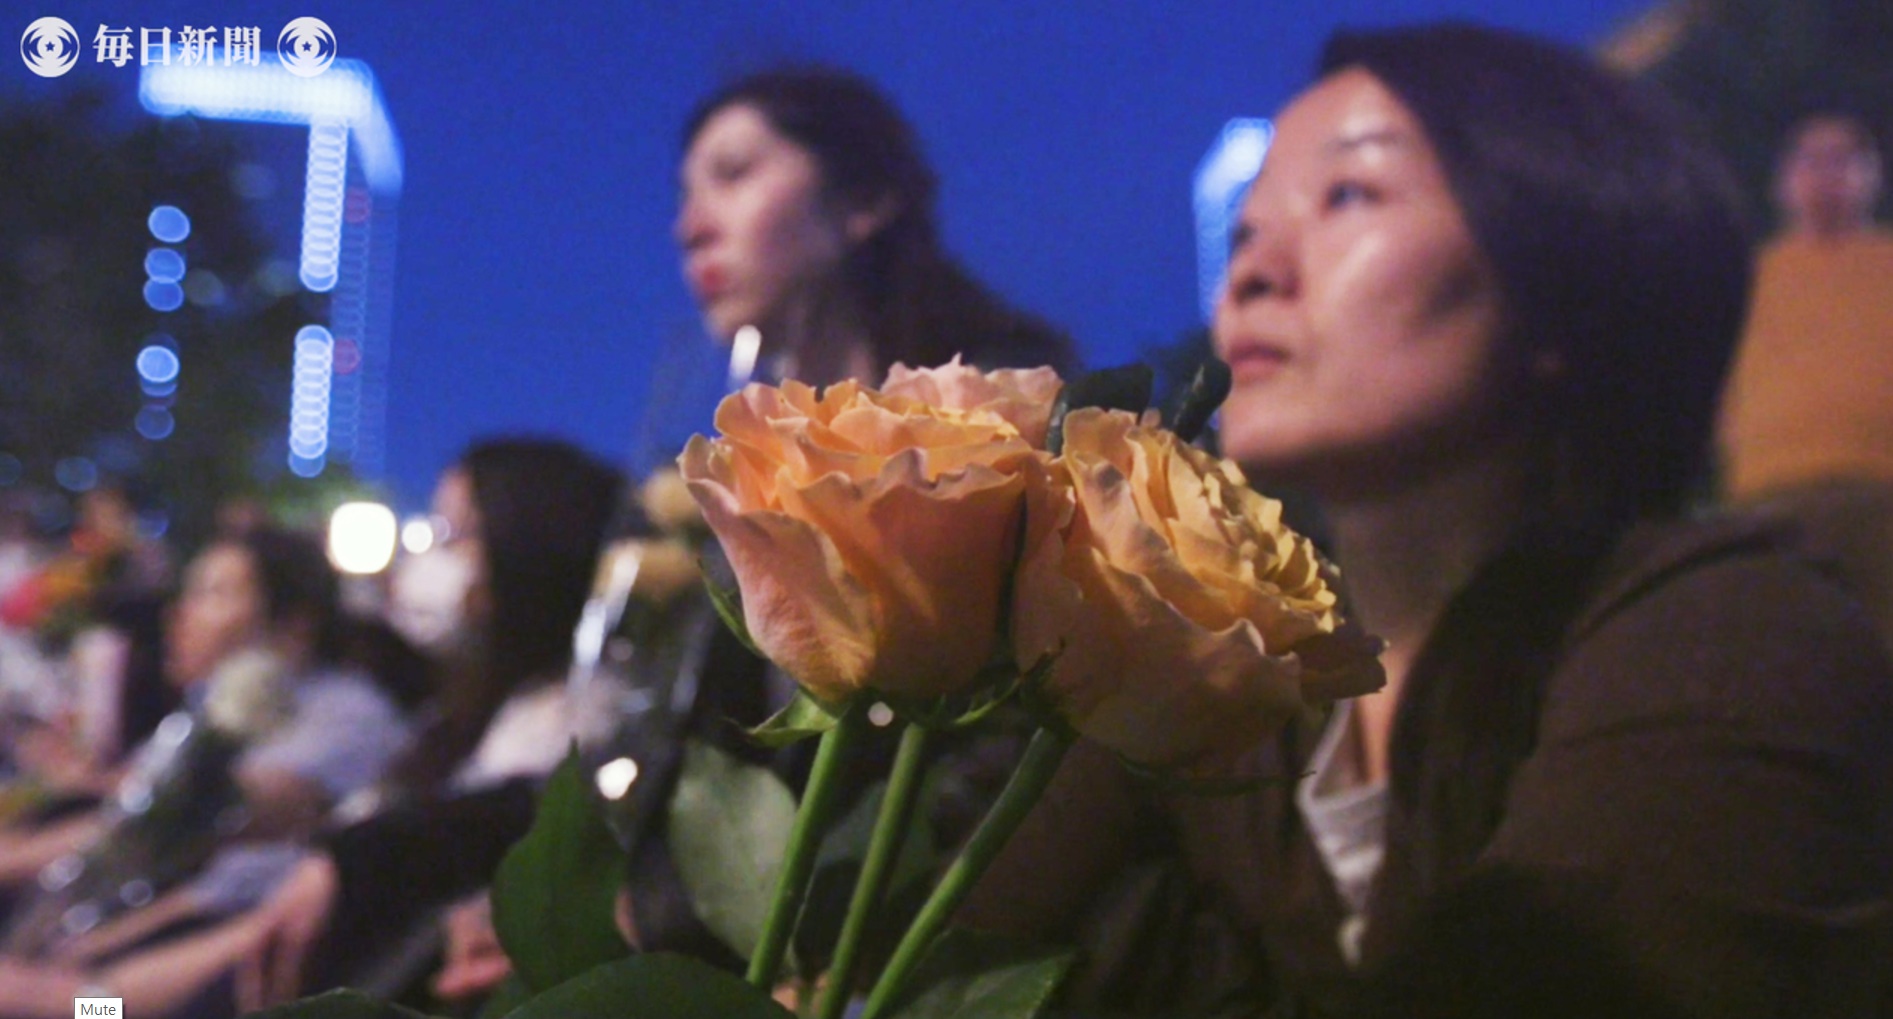 지난 11일 일본 도쿄역 앞 광장에서 열린 ‘플라워 데모’에서 성폭력 피해자 지원단체 및 인권단체 등 회원들이 꽃을 들고 성폭력 피해자의 증언을 듣고 있다. <마이니치신문 보도 화면 캡처>